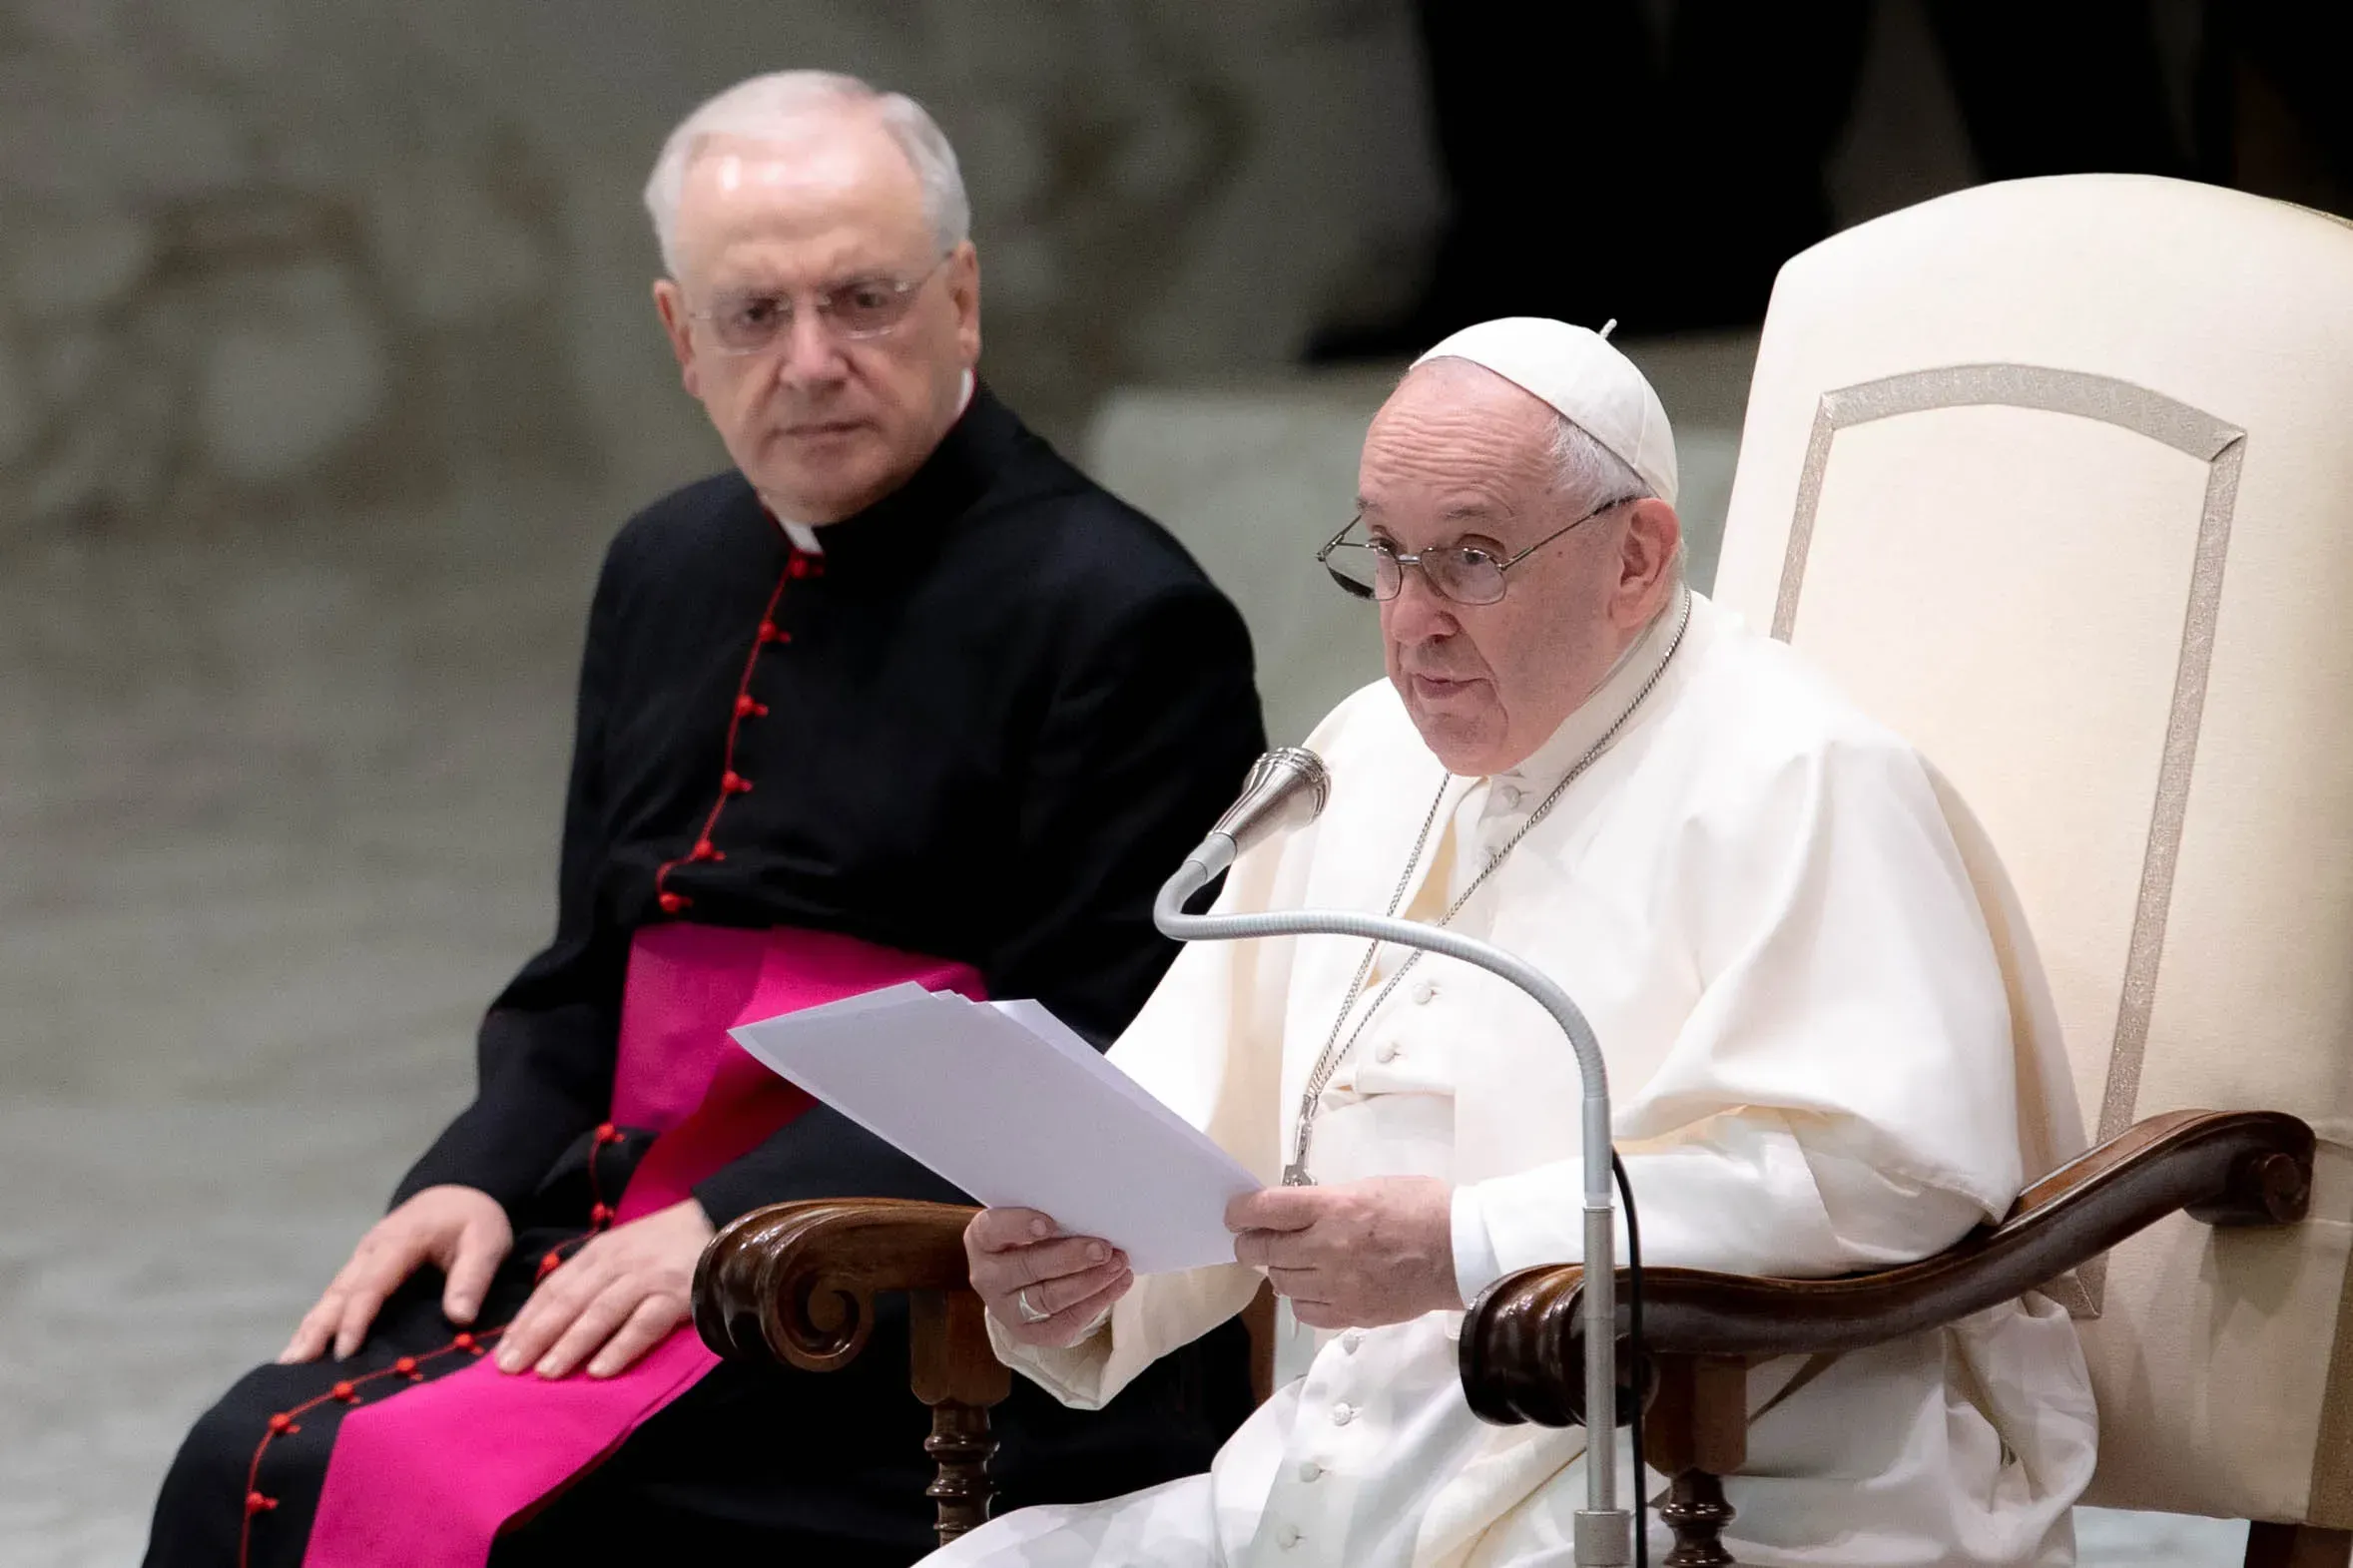 Le pape François prononce son discours d'audience générale dans la salle Paul VI du Vatican, le 27 octobre 2021. Daniel Ibanez/CNA